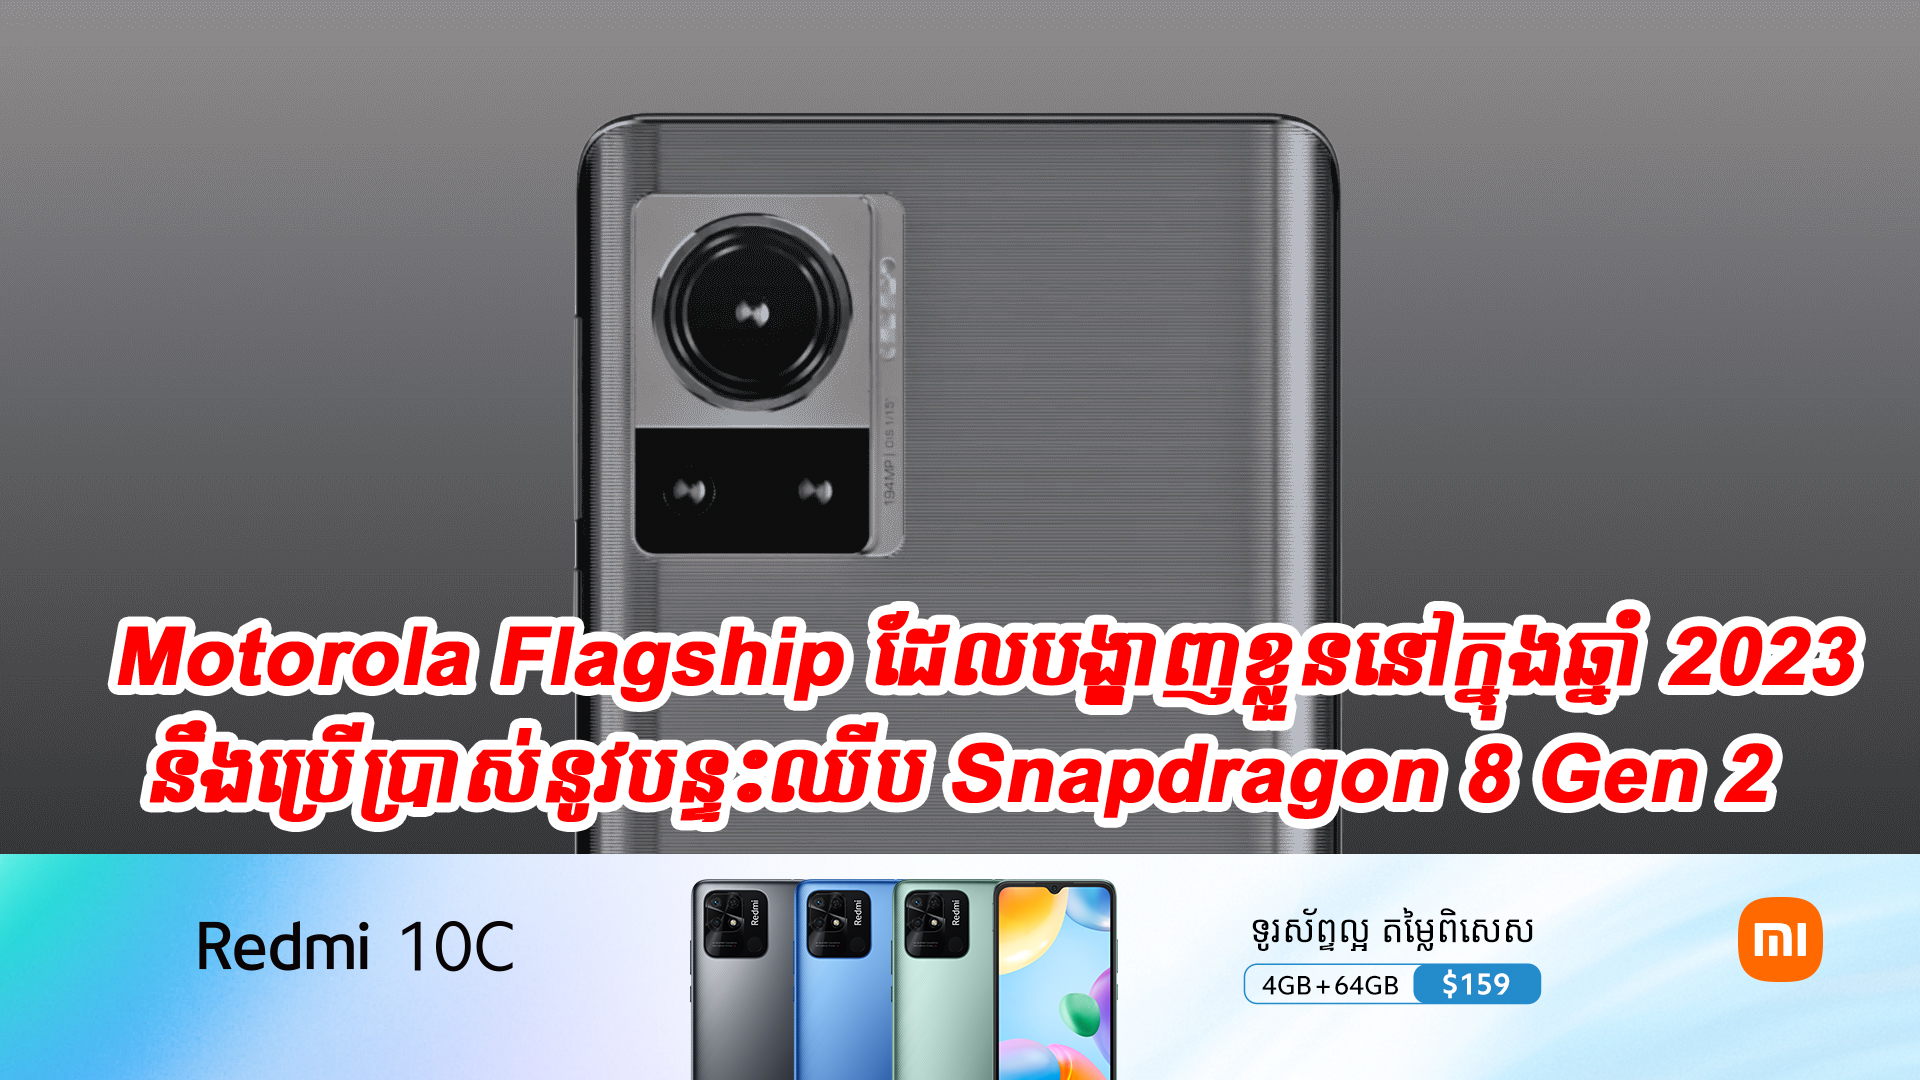 ស្មាតហ្វូន Motorola Flagship ដែលបង្ហាញខ្លួននៅក្នុងឆ្នាំ 2023 នឹងប្រើប្រាស់នូវបន្ទះឈីប Snapdragon 8 Gen 2